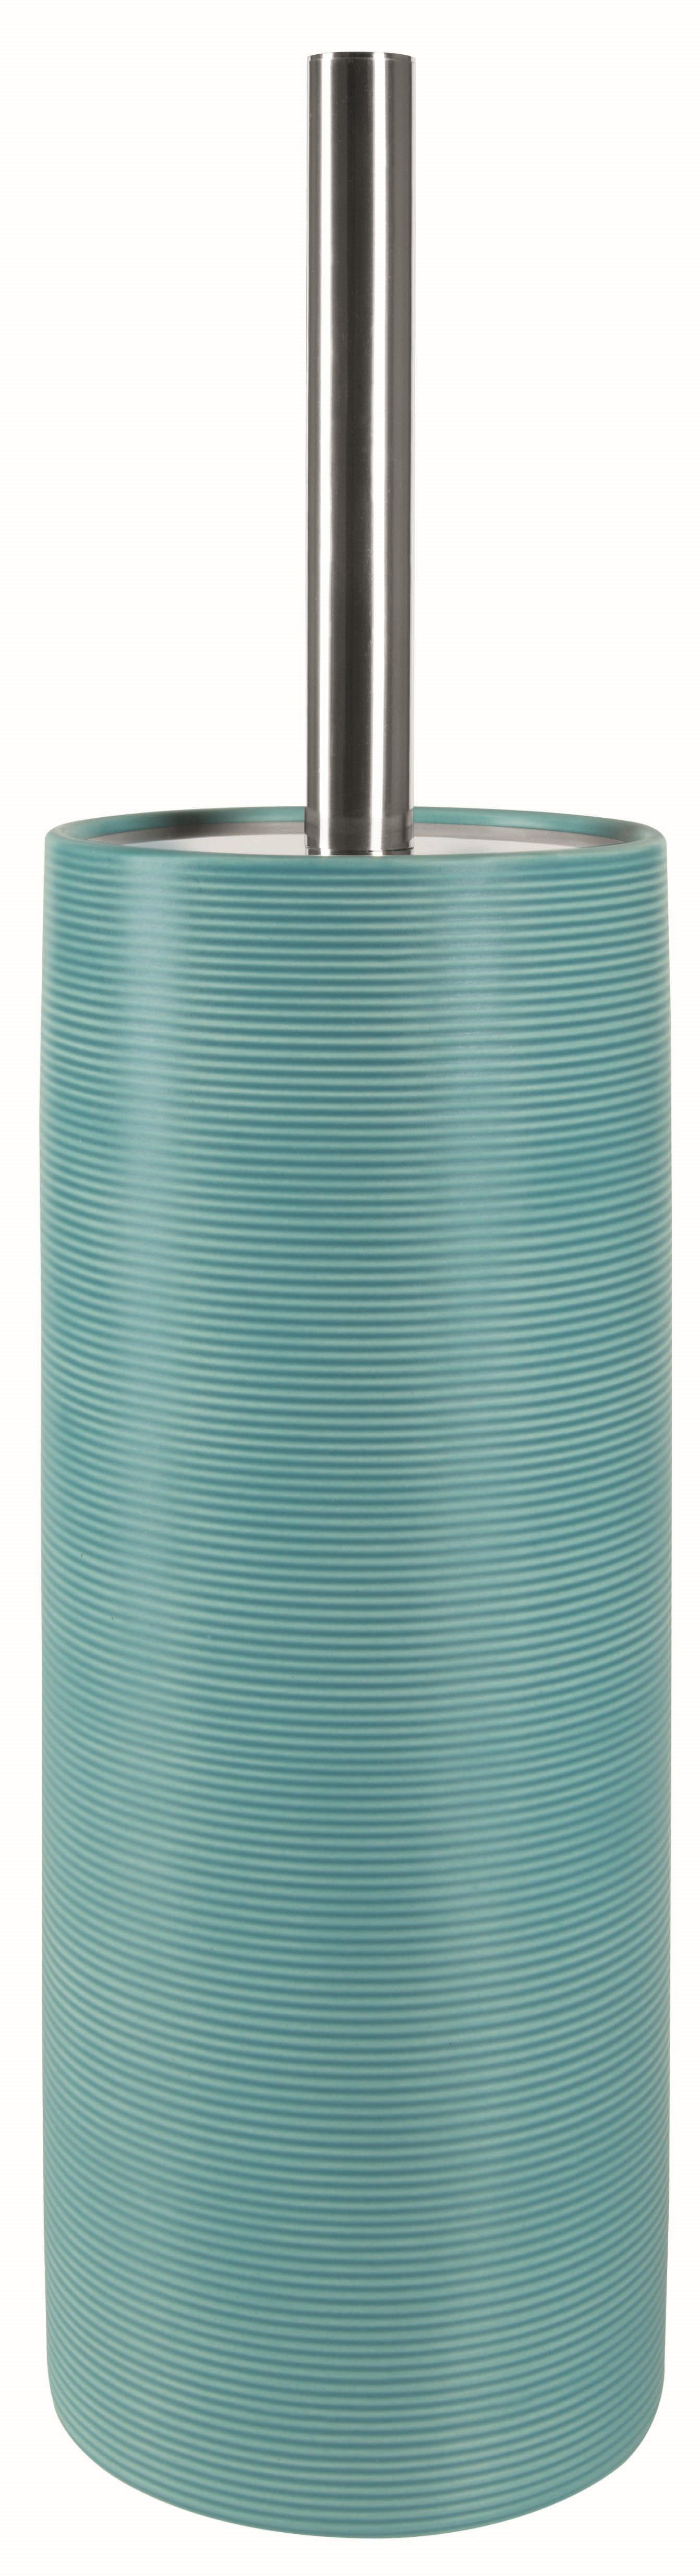 spirella Toilettenpapierhalter WC-Bürste TUBE RIBBED, Toilettenbürste aus hochwertiger Keramik, mit Deckel, mit Rillenstruktur in 3D-Effekt, türkisblau | Toilettenbürsten